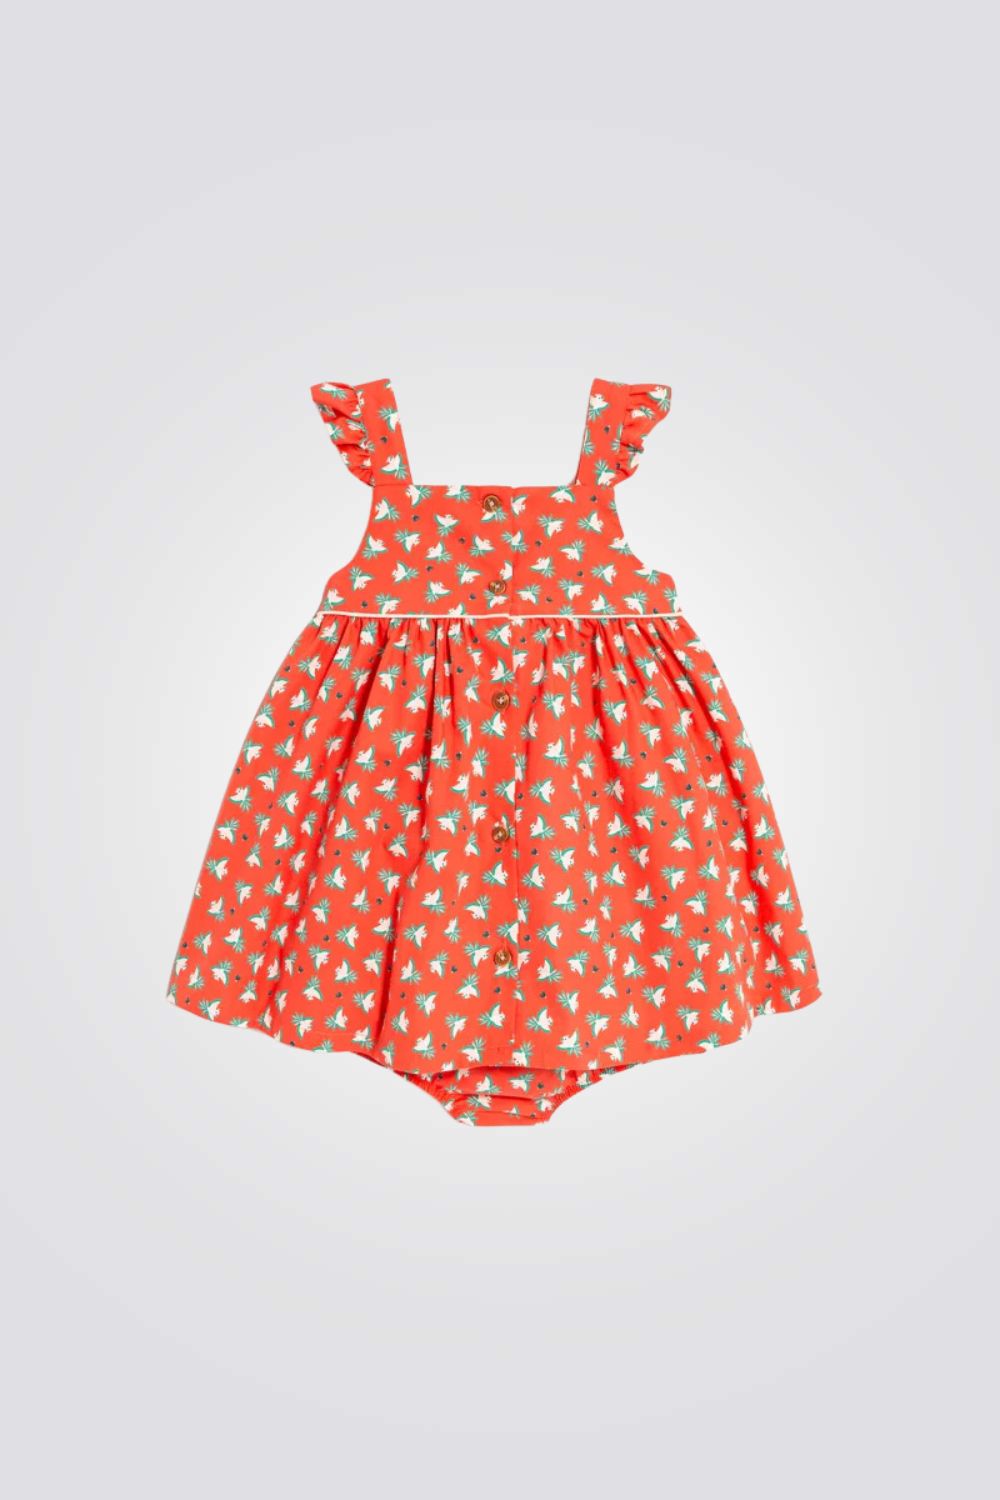 שמלה לתינוקות בצבע כתום עם הדפס תוכים